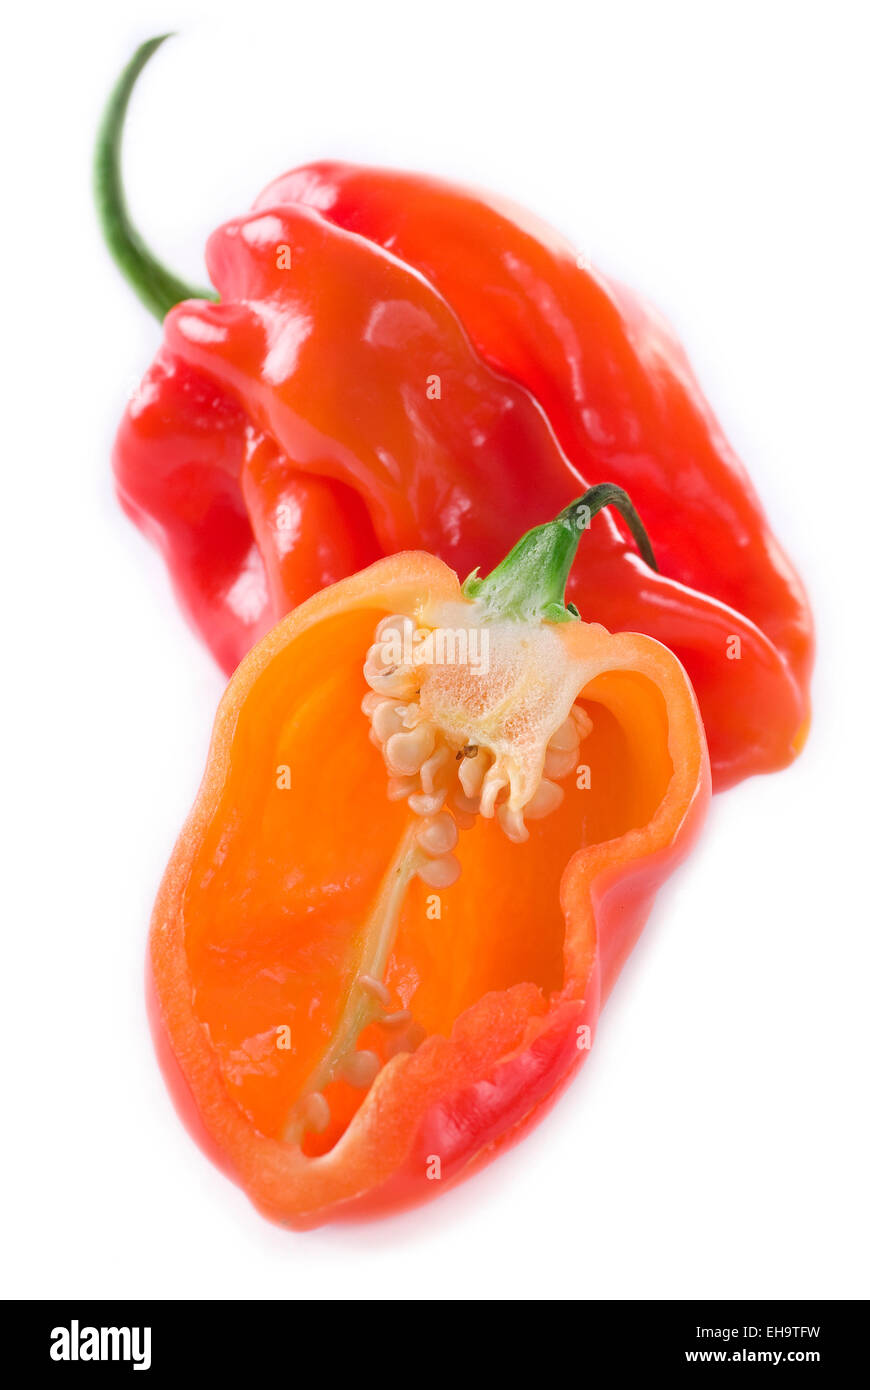 Habanero chili on white background. Stock Photo